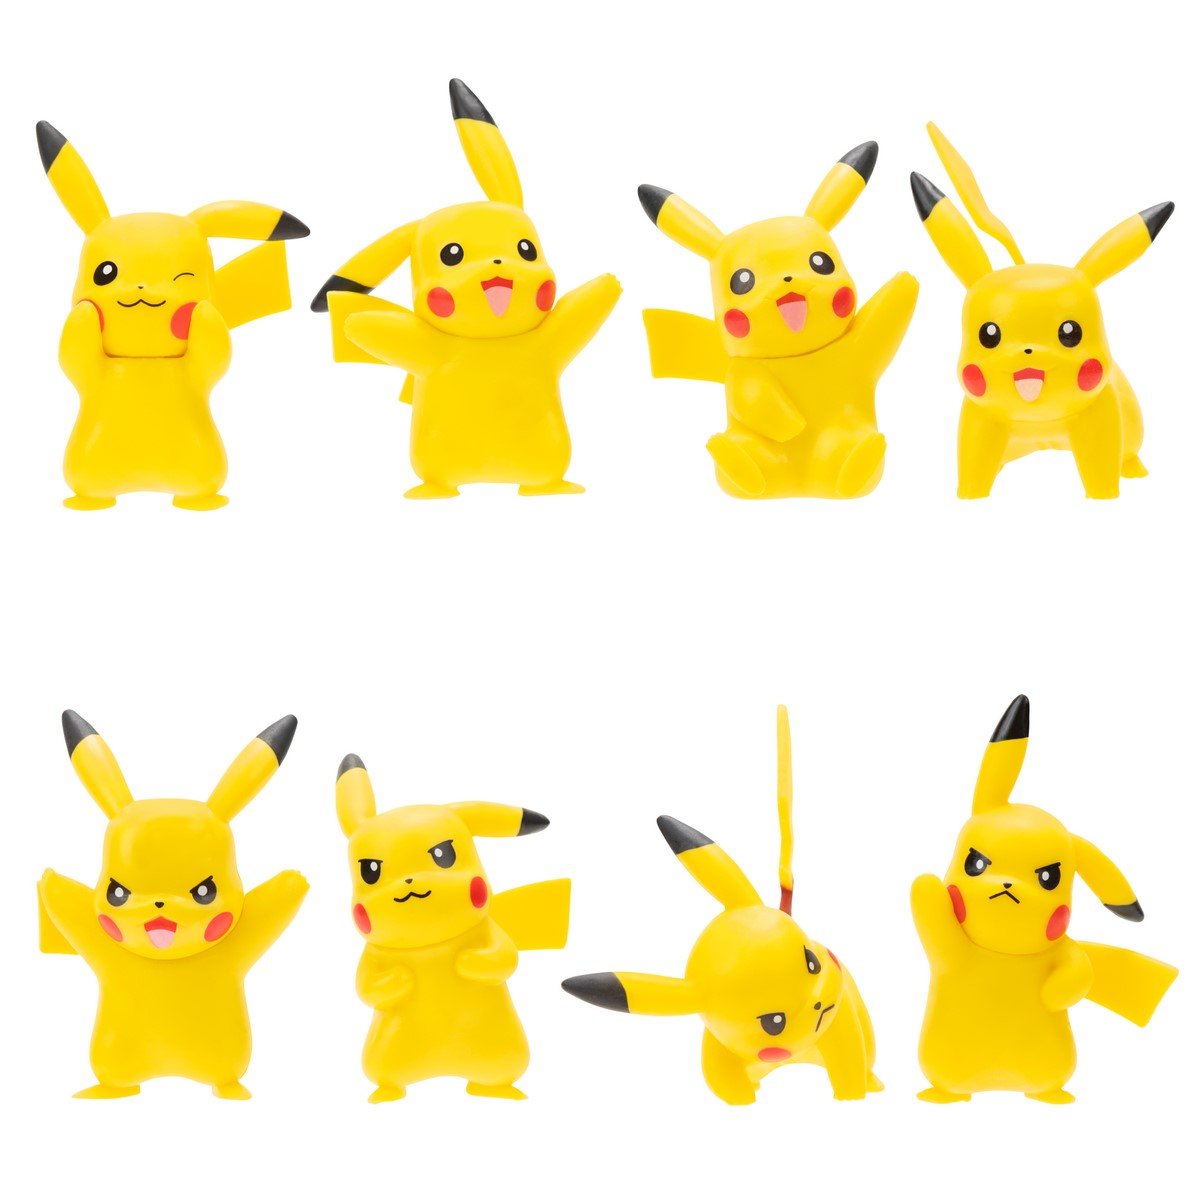 Coffret de 8 figurines Pikachu - Pokémon - La Grande Récré